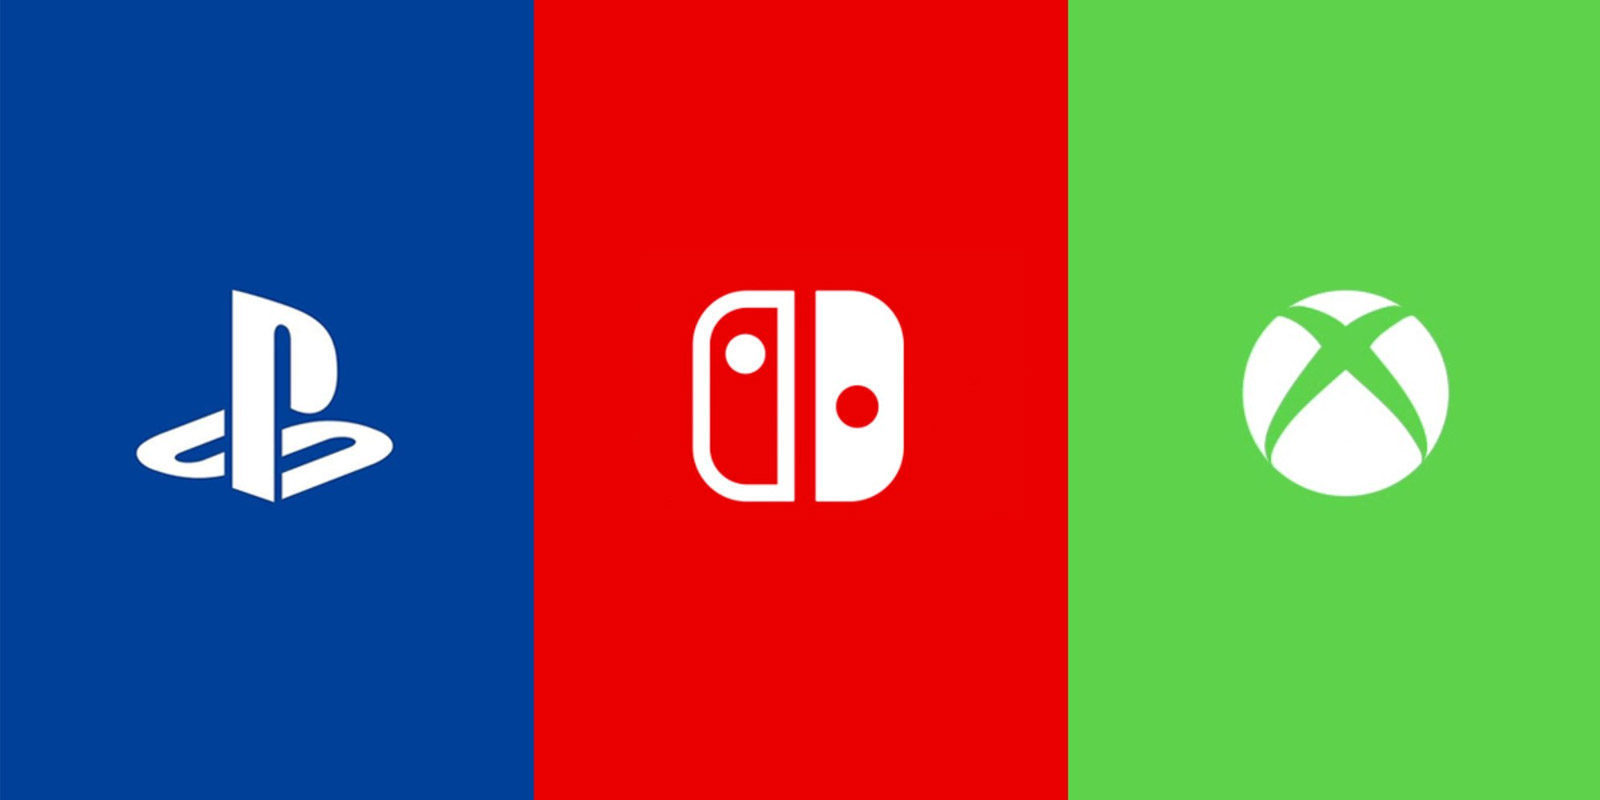 Nintendo recoge feedback positivo durante el E3 2017